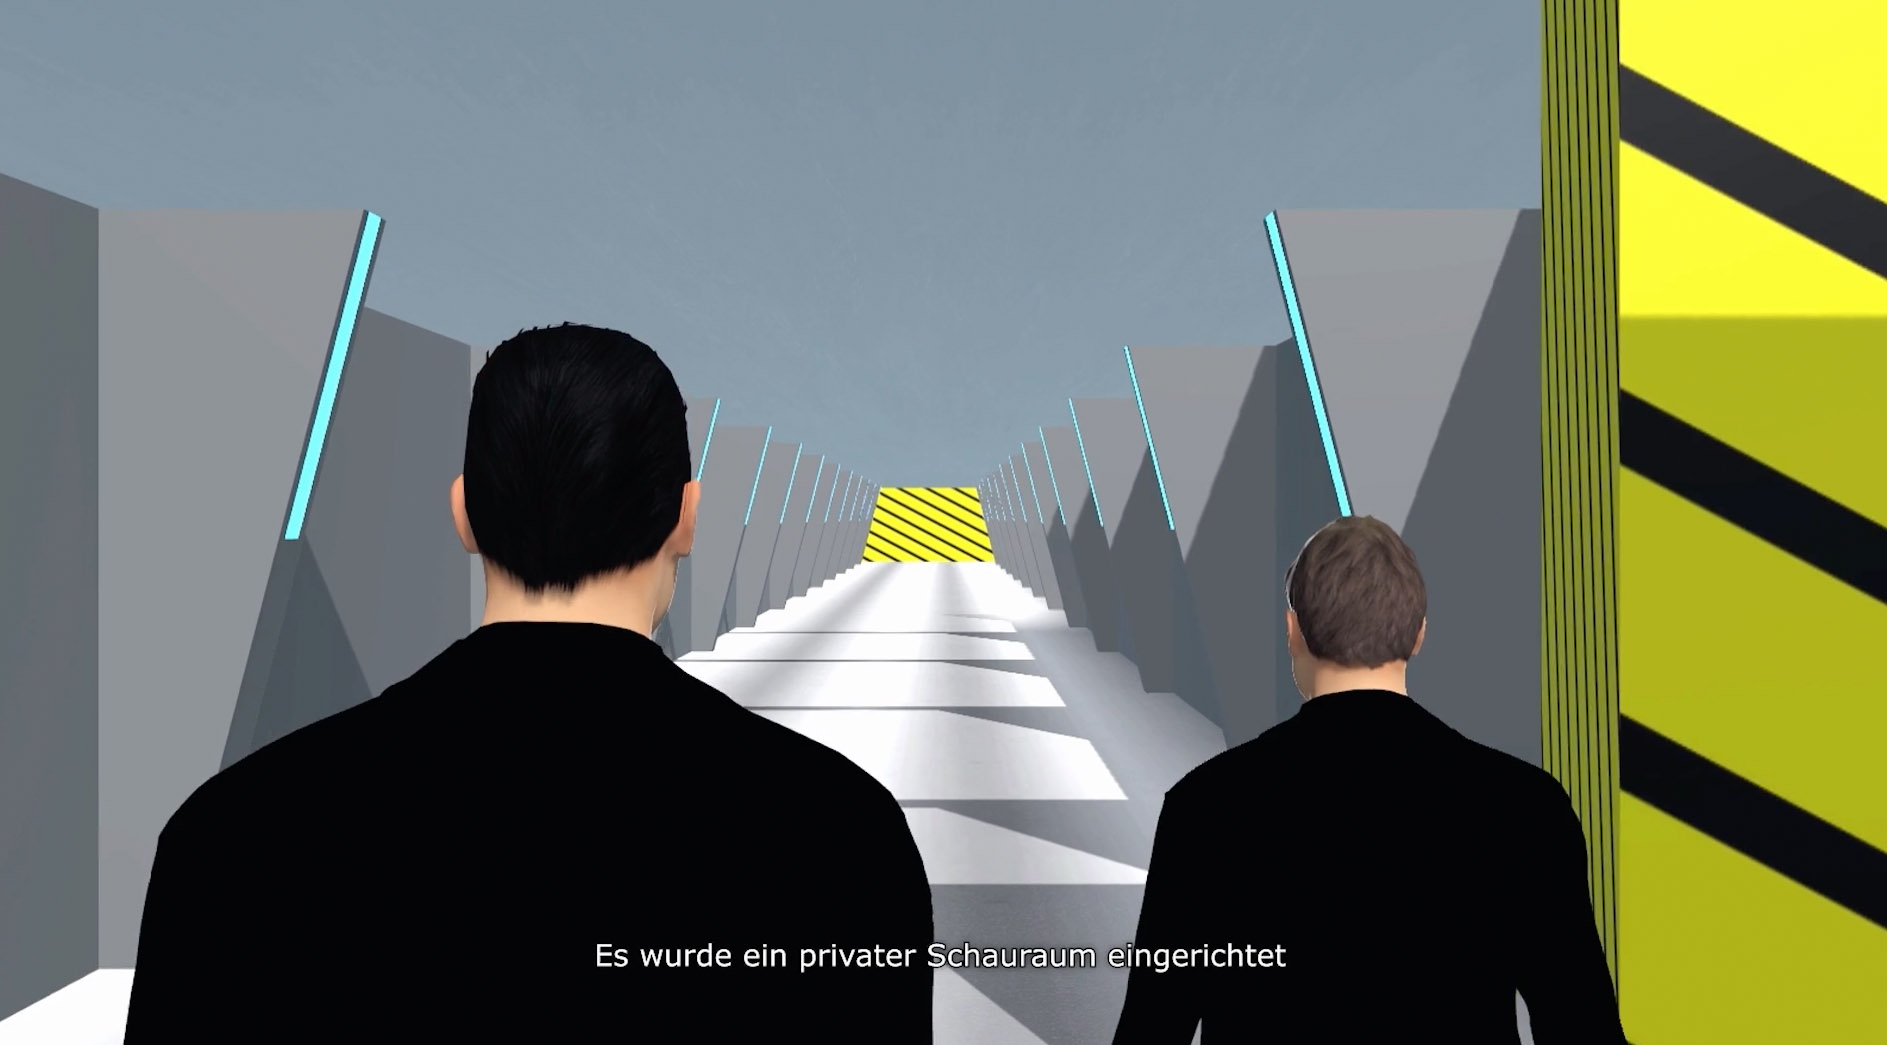 Zwei Männer treten durch einen langen Gang. Das Bild ist im Animationsstil gehalten. Darunter steht: "Es wurde ein privater Schauraum eingerichtet"